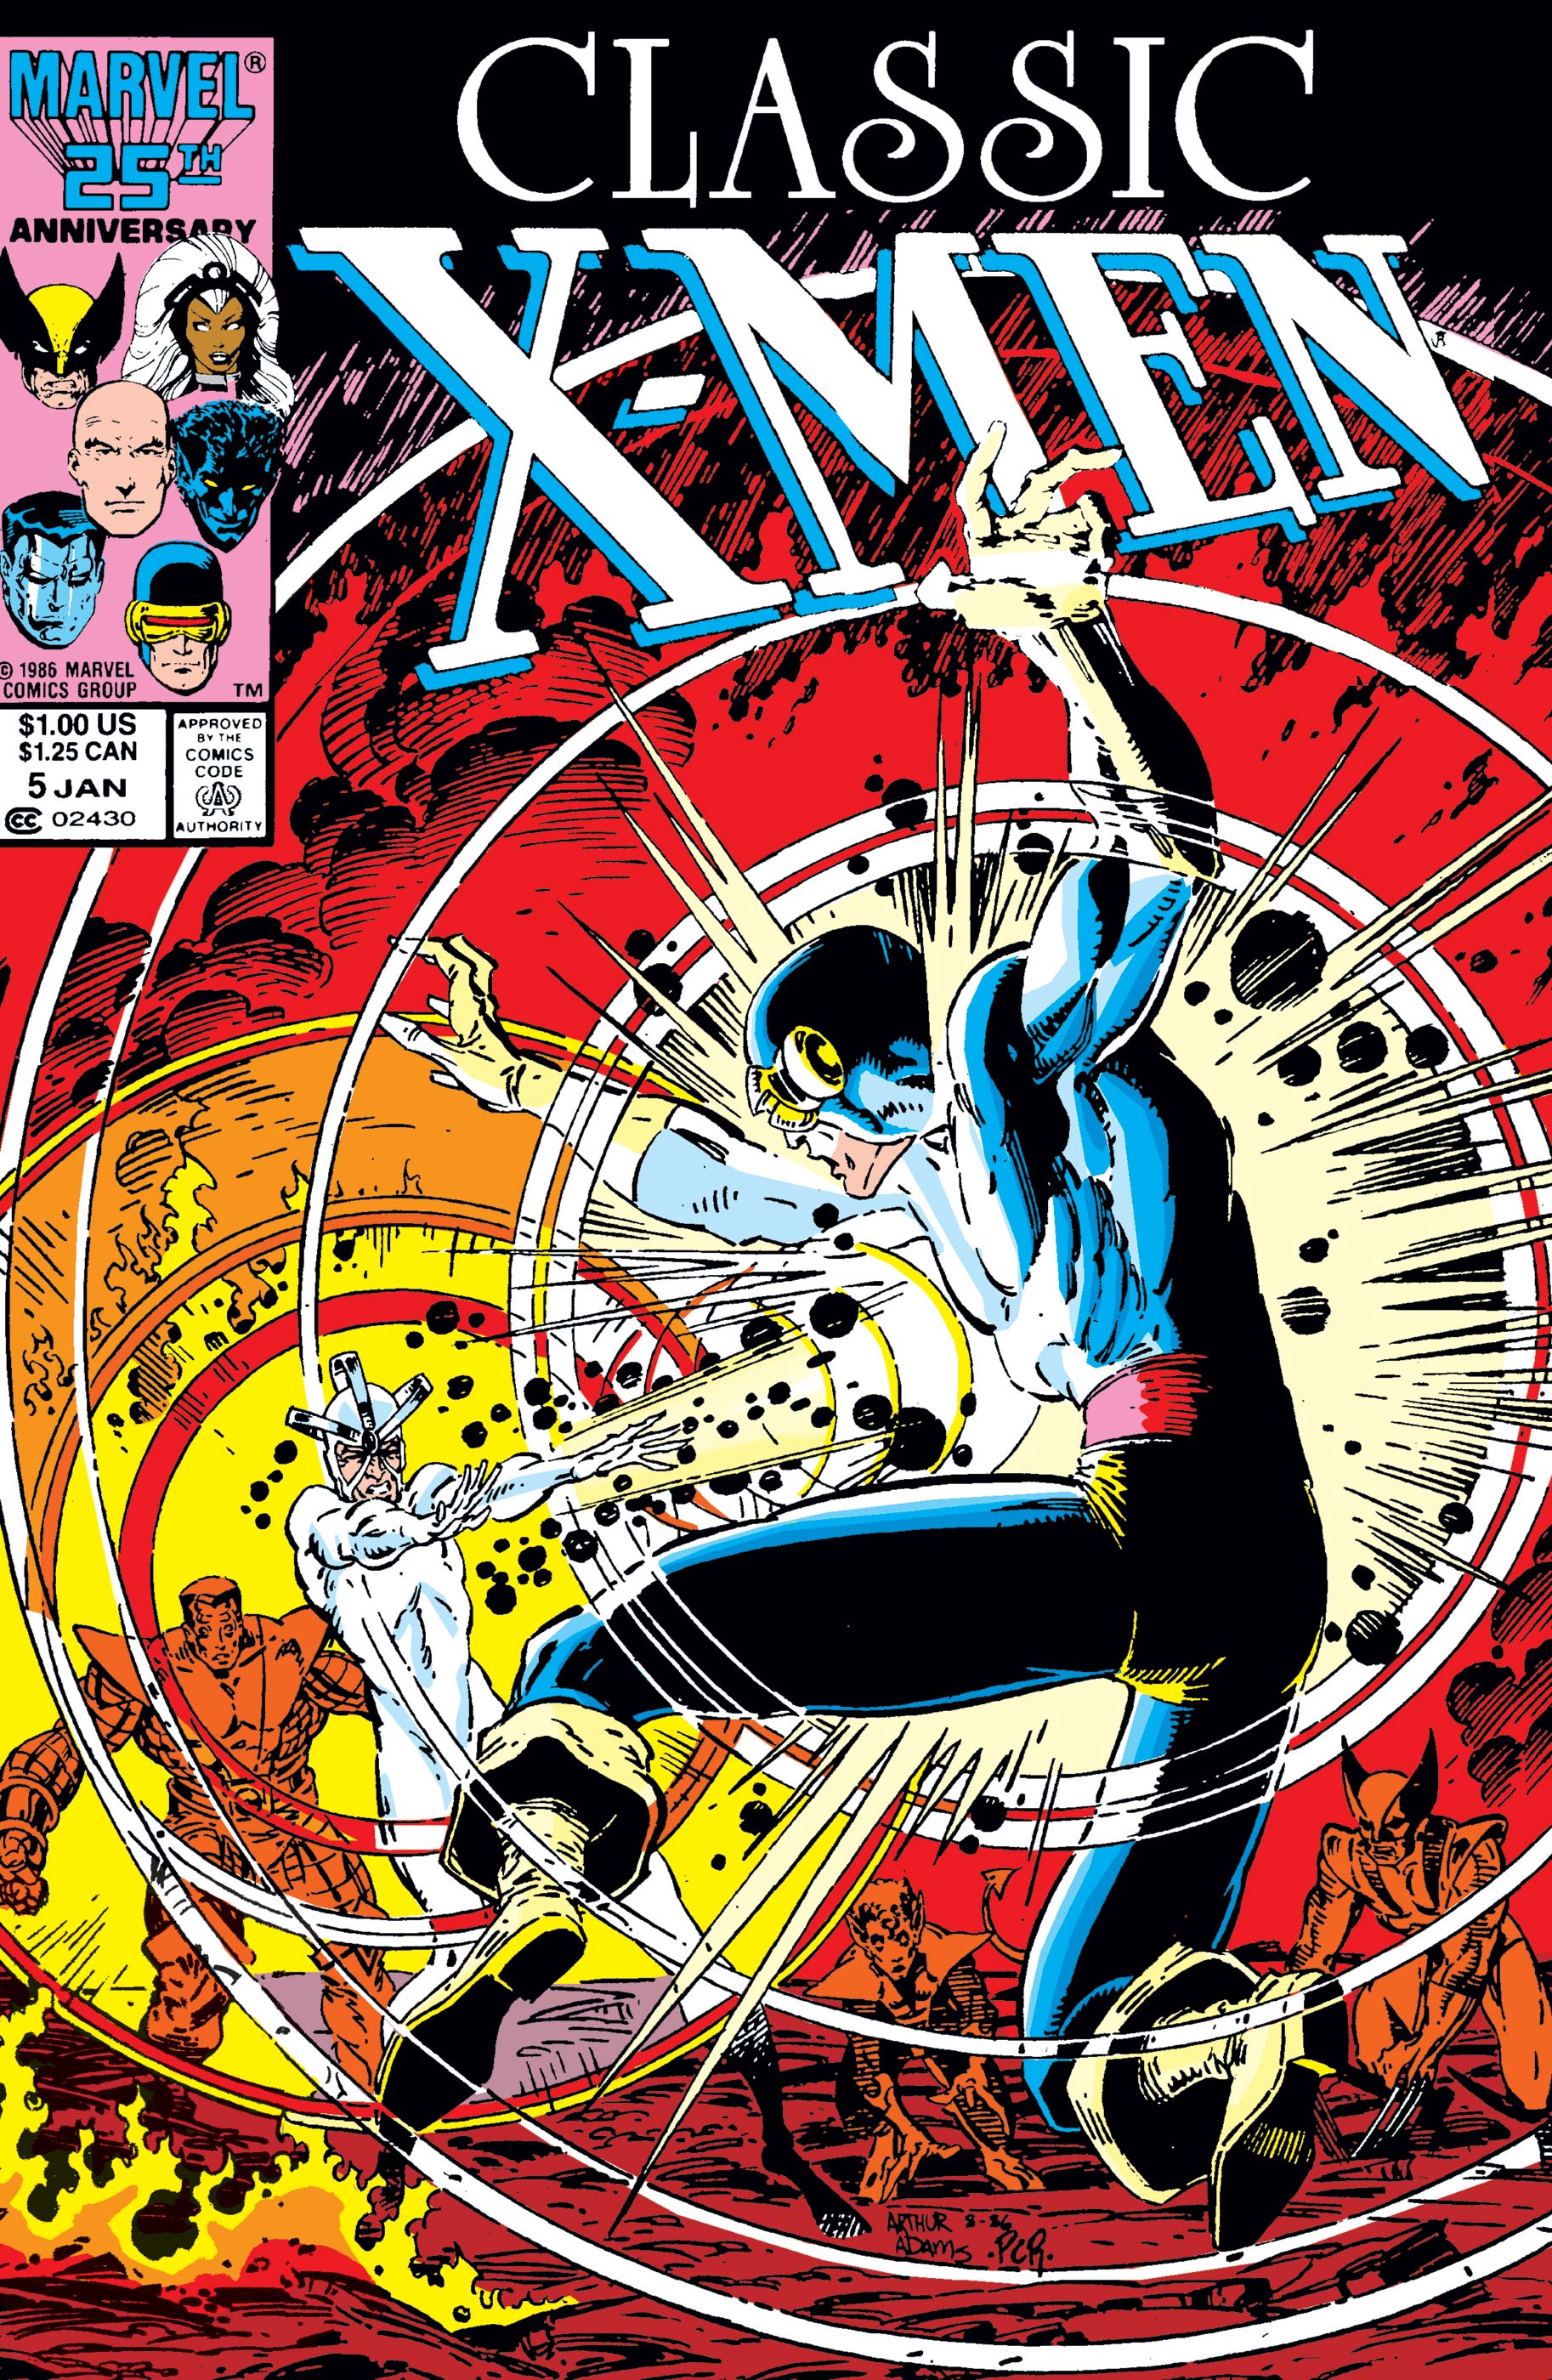 Classic X-Men And X-Men Classic #1-98 1986-1994 Marvel Comics Choice